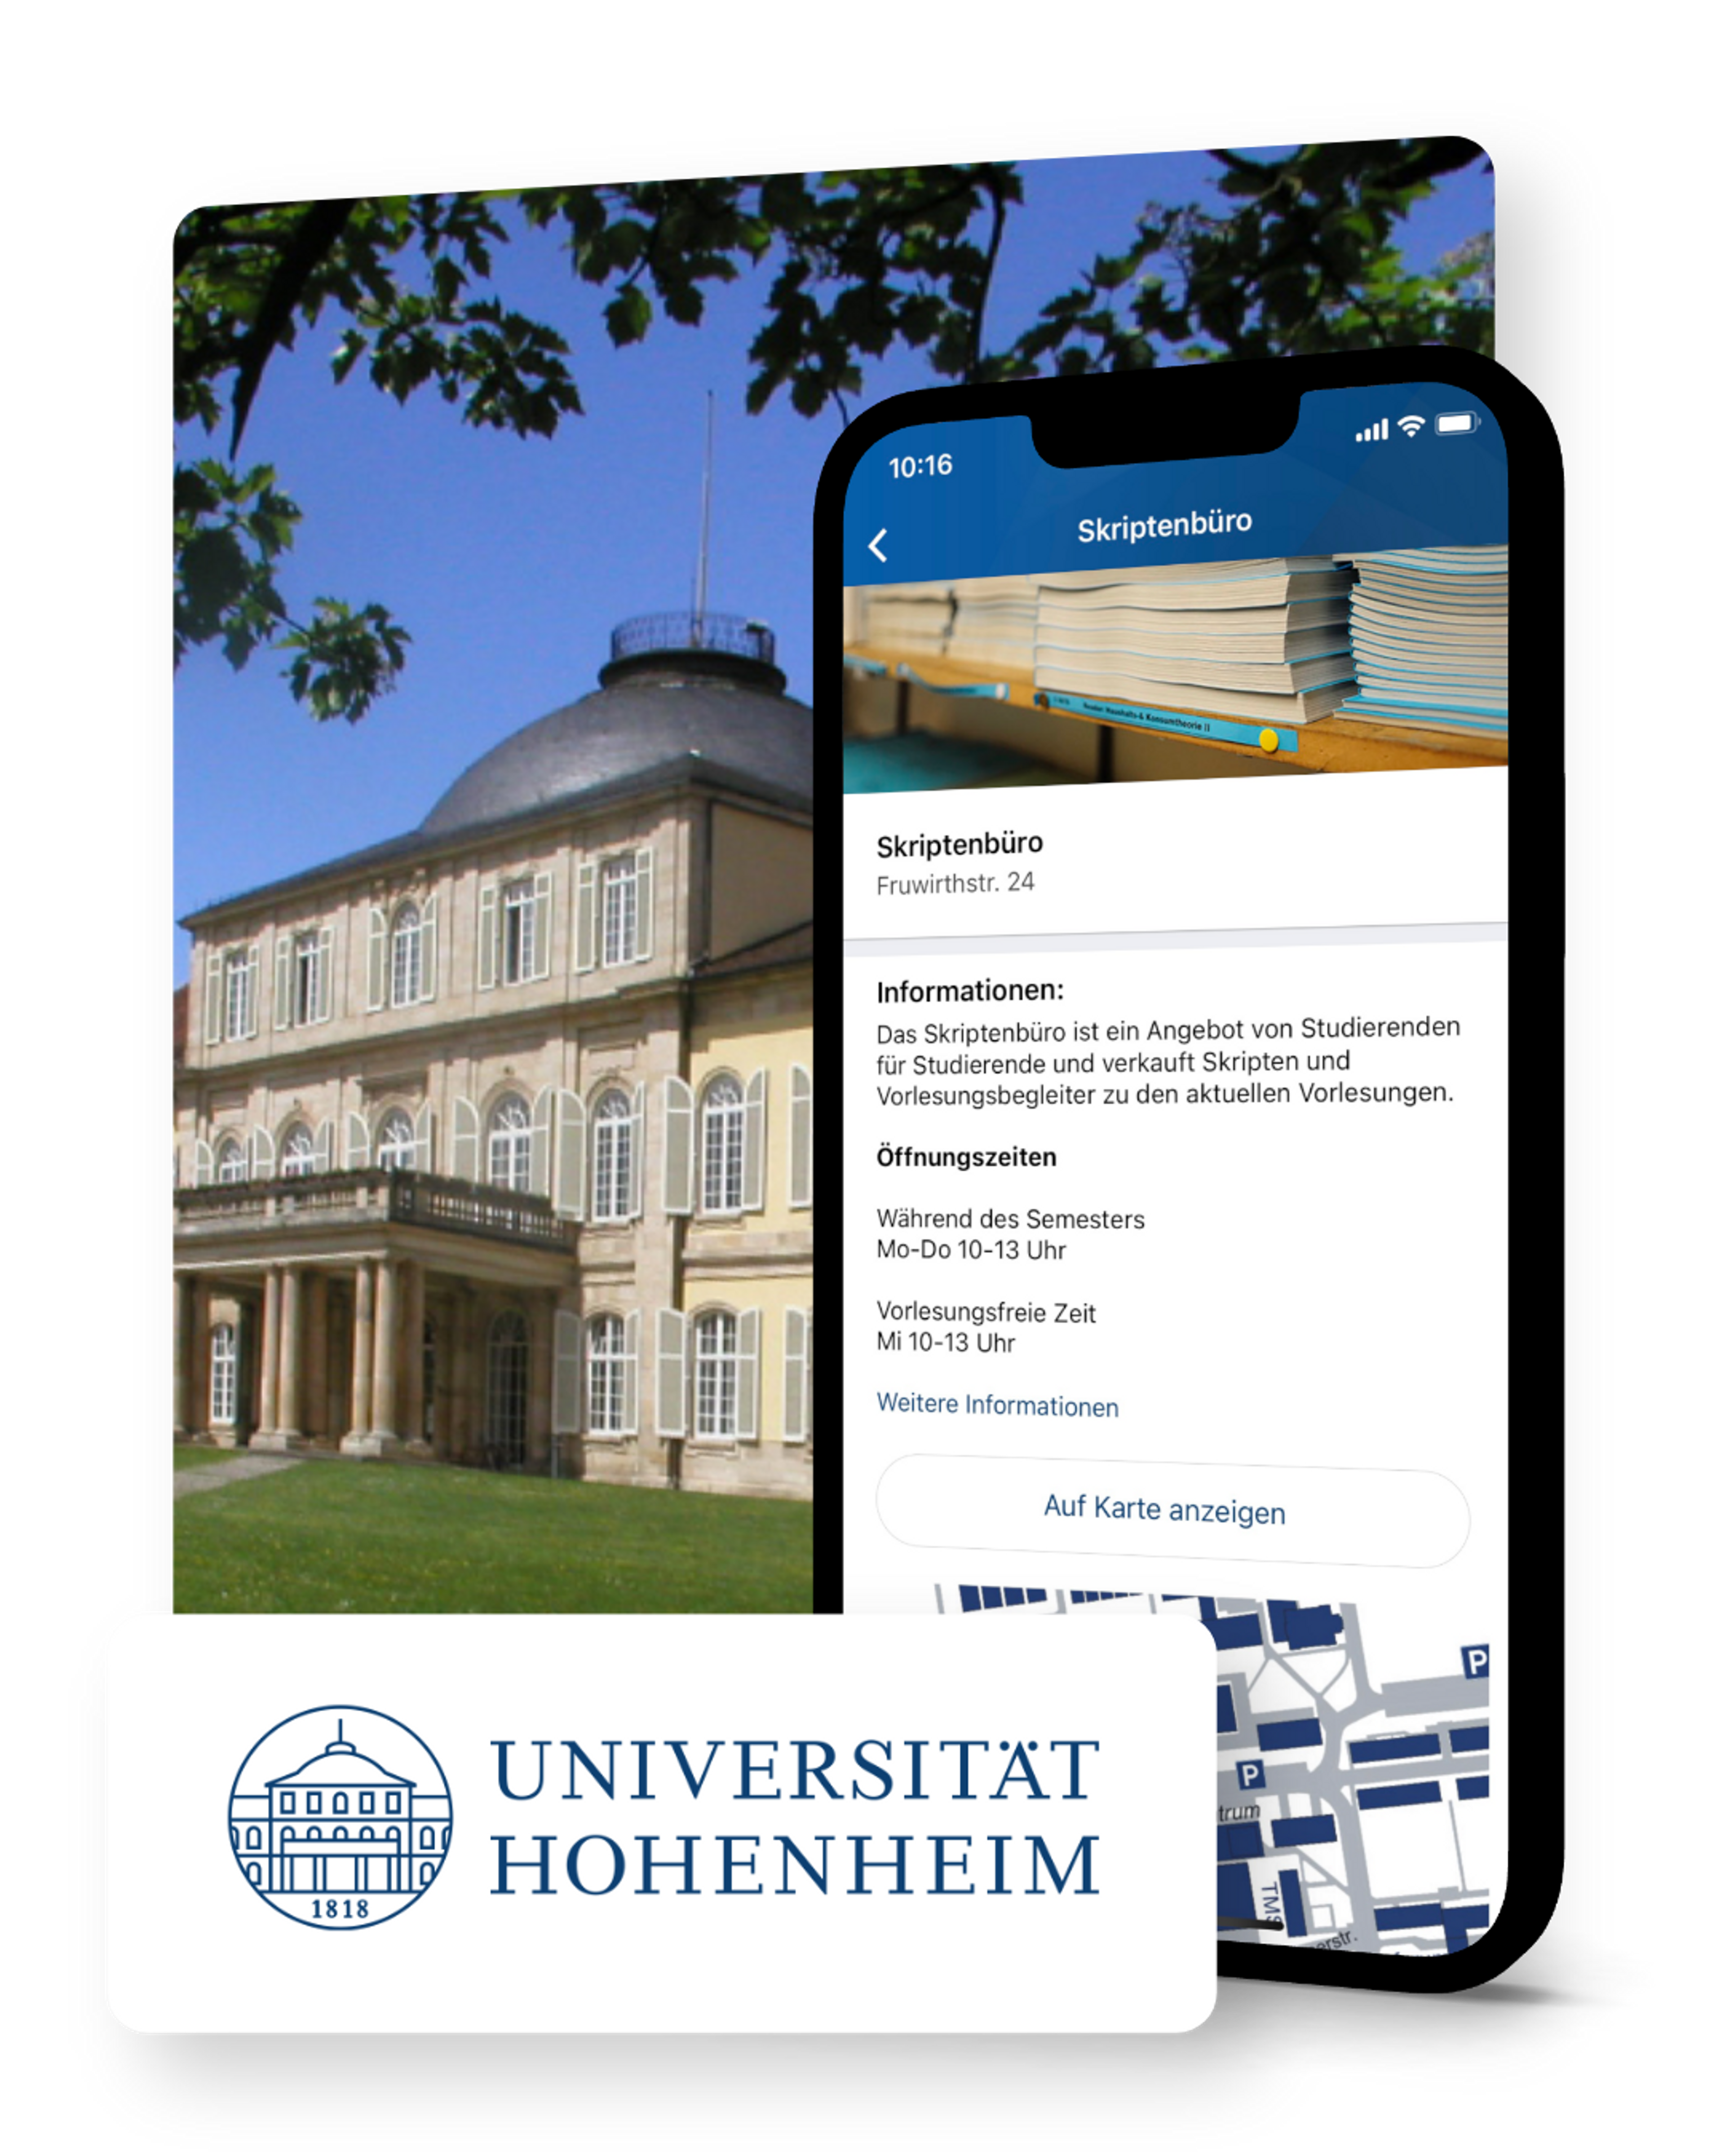 University Hohenheim